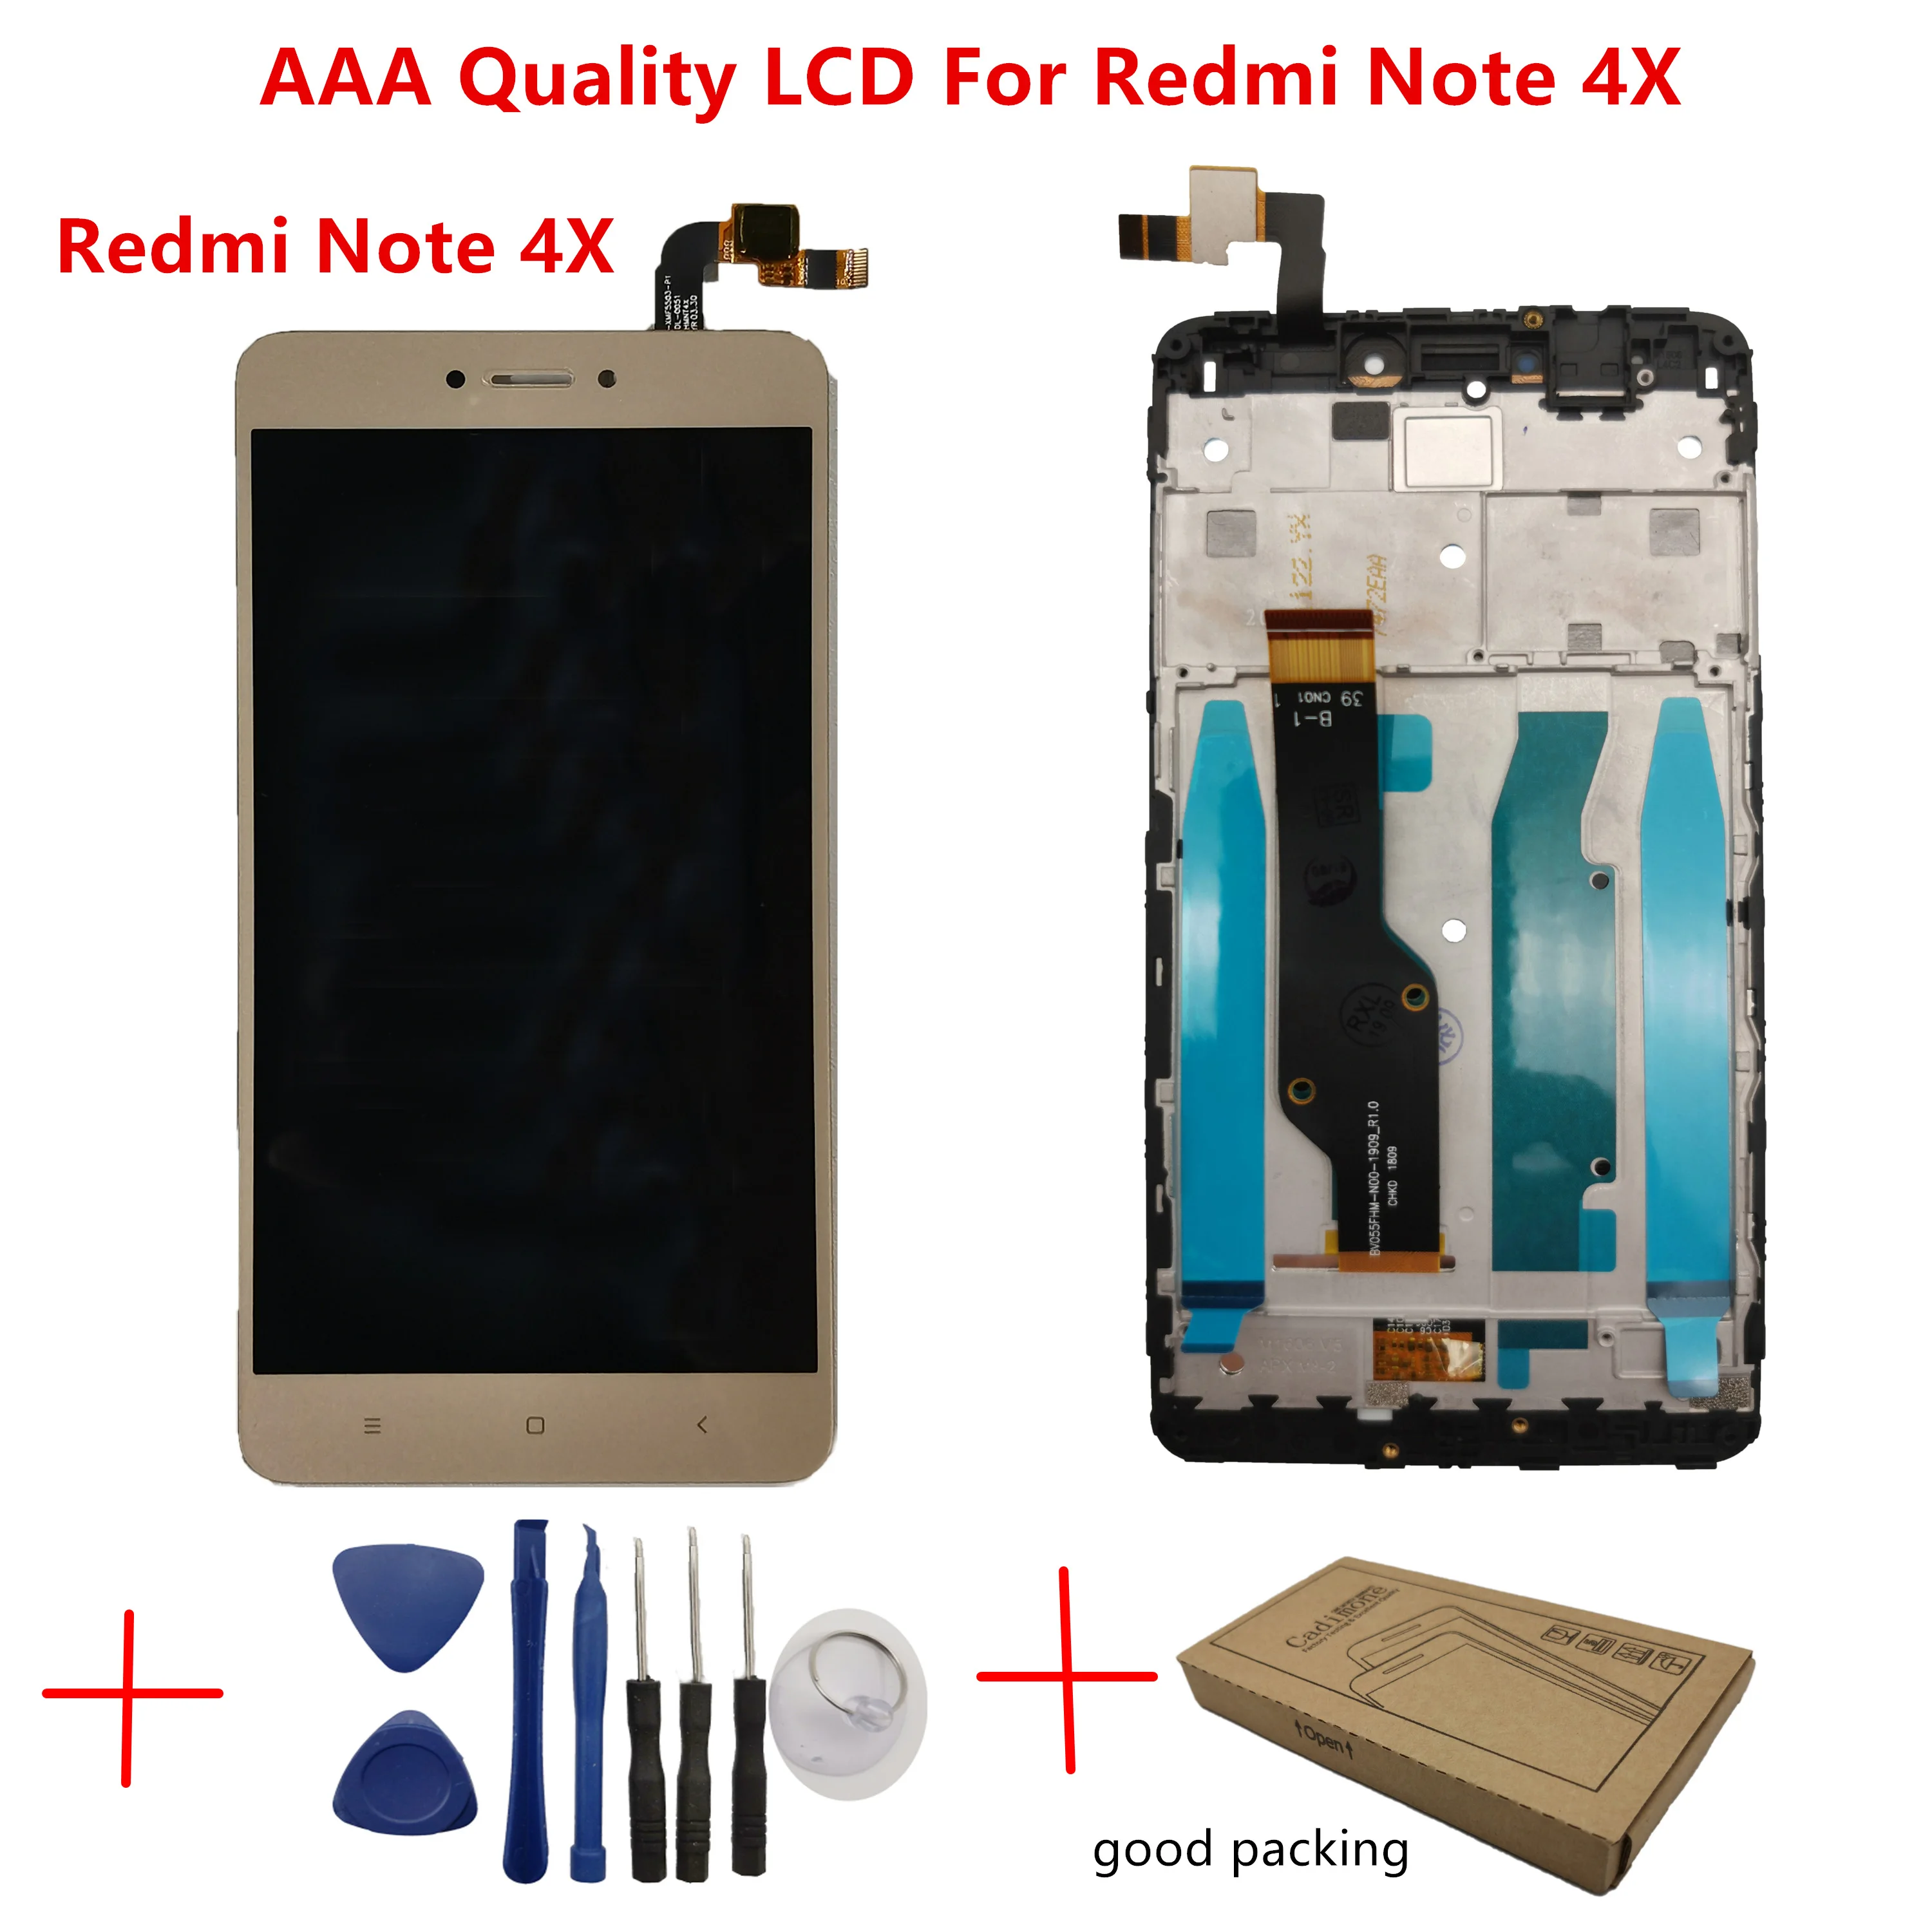 2016102 Redmi Note 4